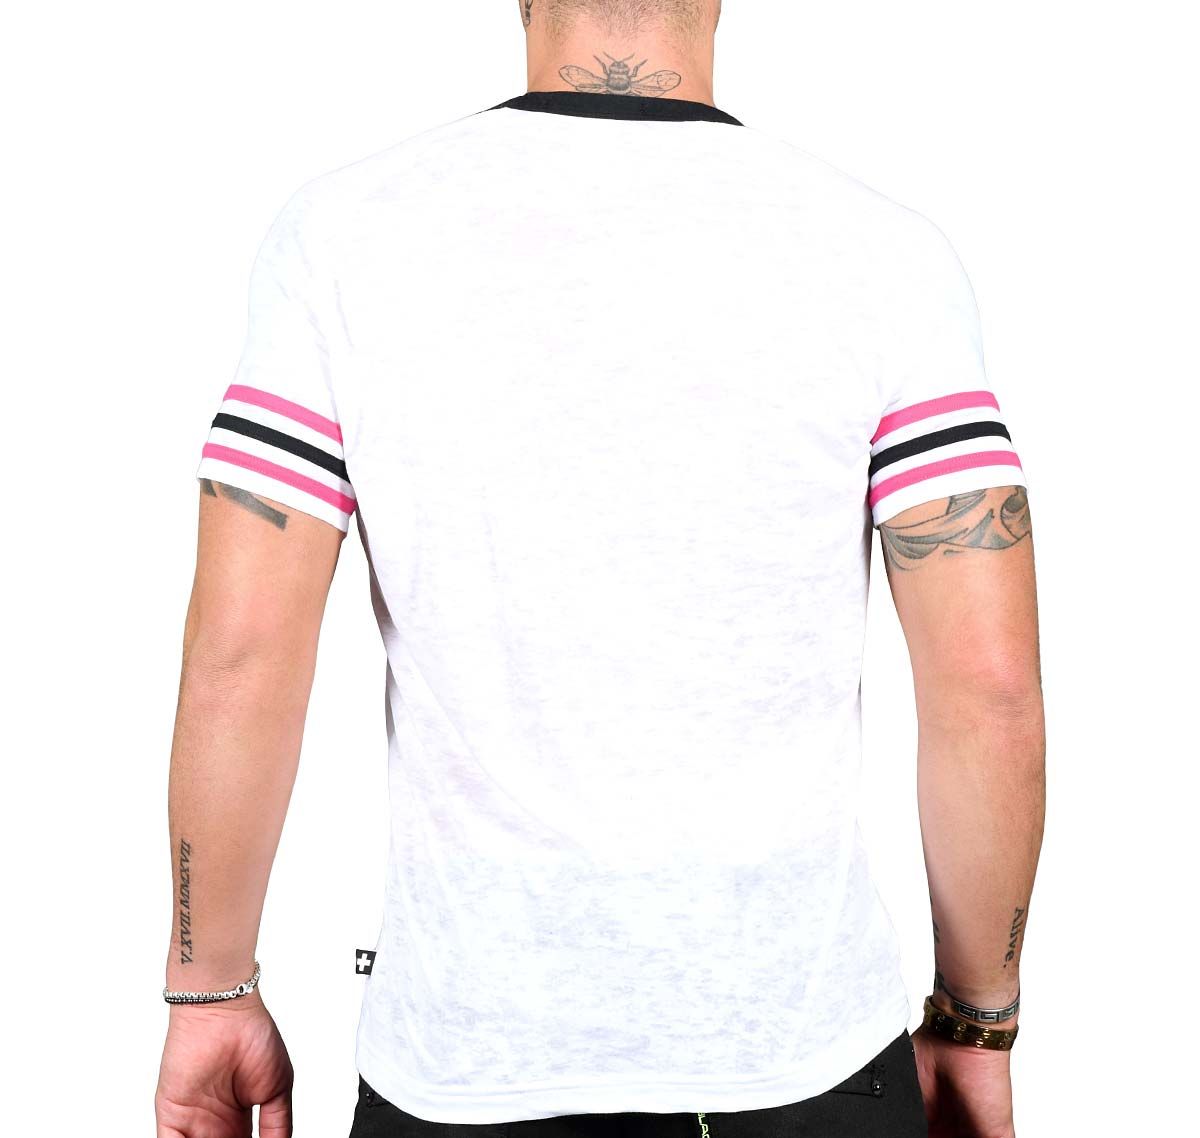 Andrew Christian T-Shirt BURNOUT DEEP V-NECK LAUREL TEE 10295, white